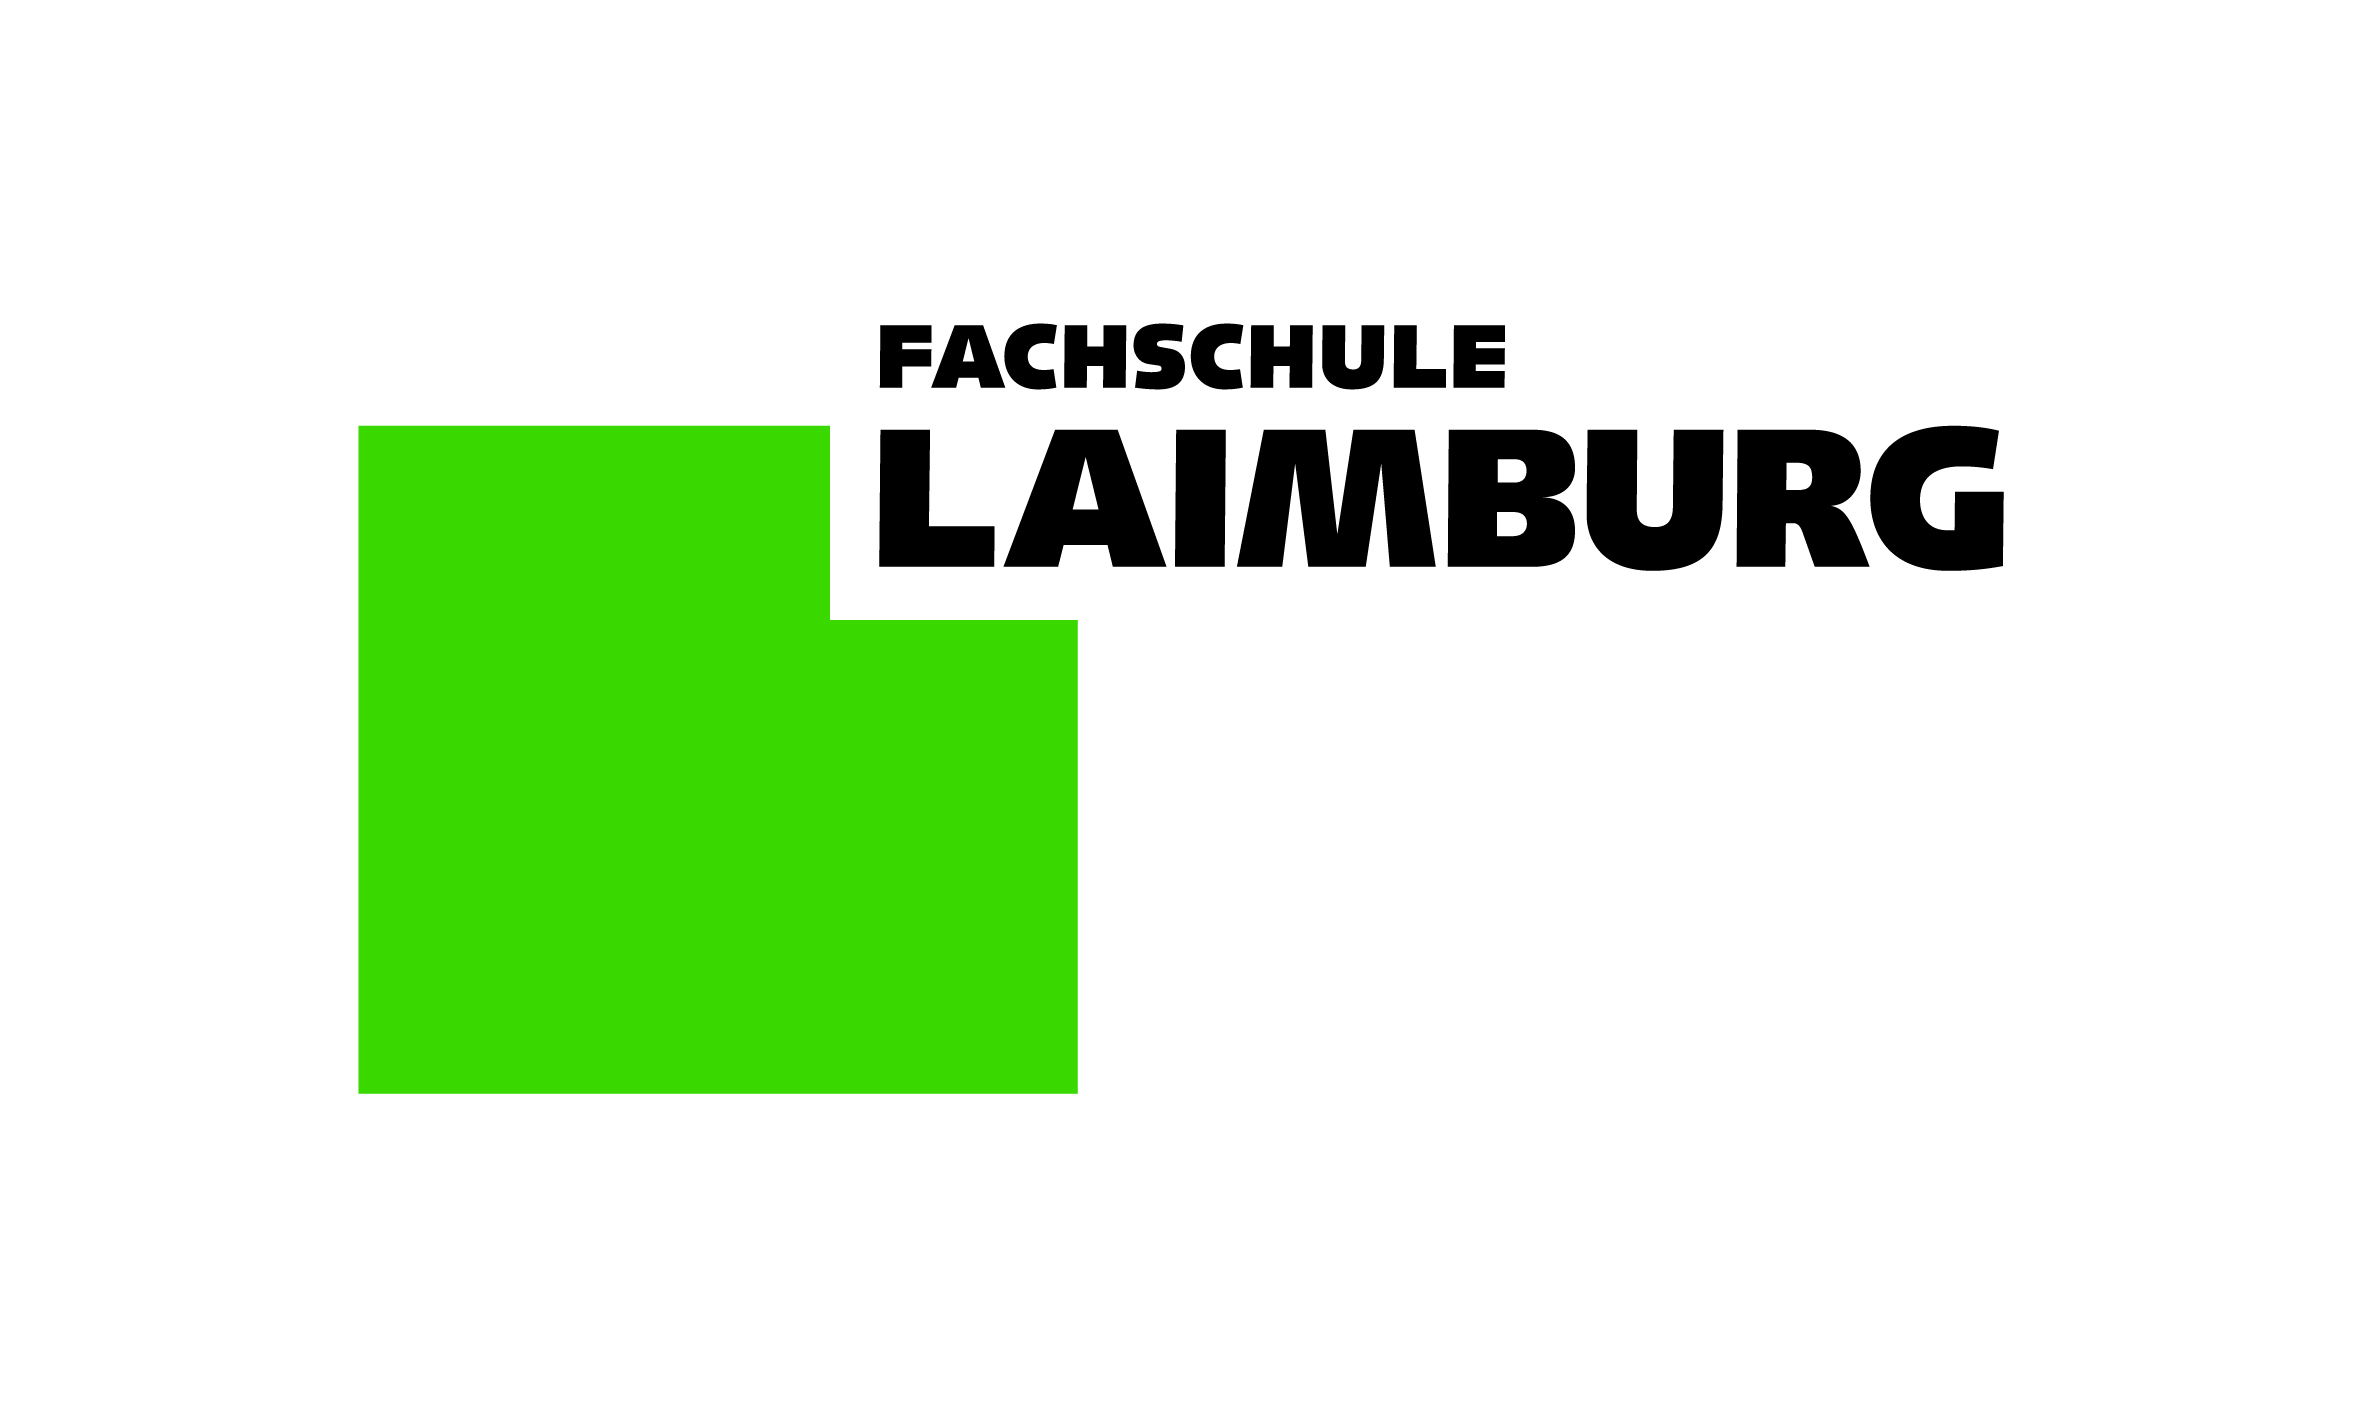 Fachschule Laimburg